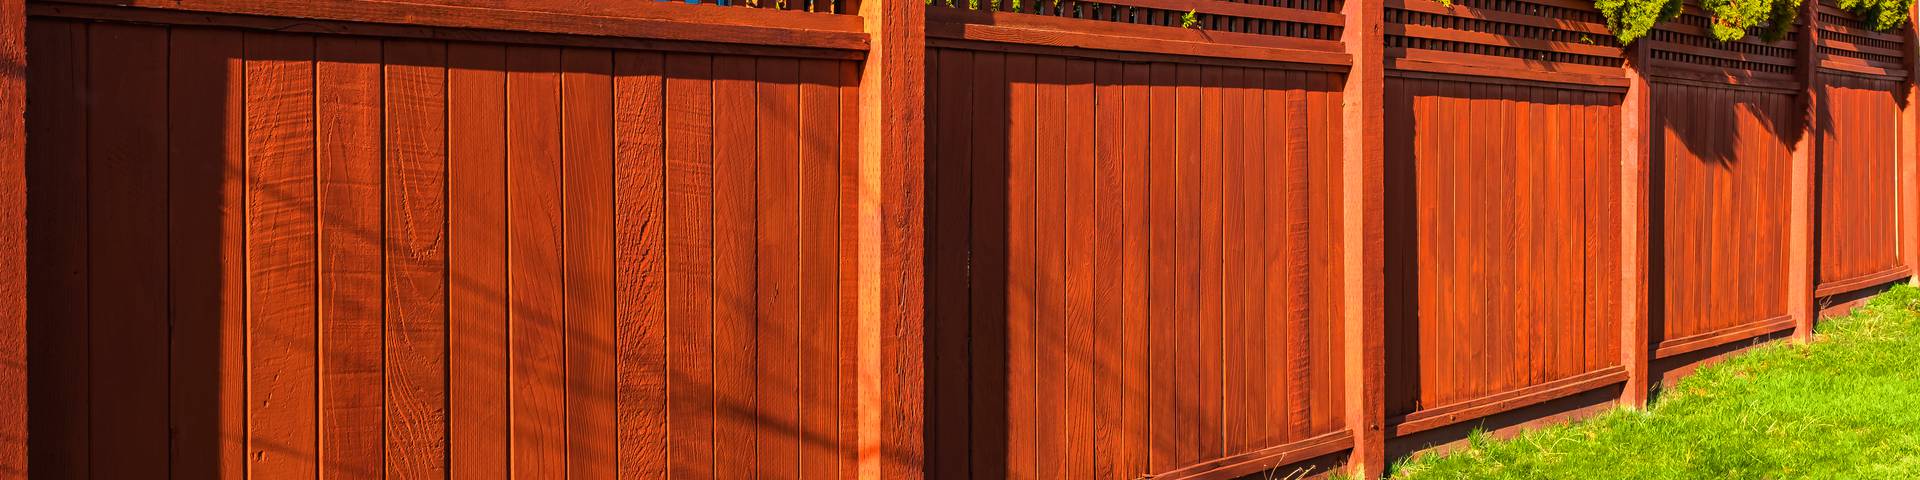 Zlecenia na ogrodzenia drewniane Podlaskie